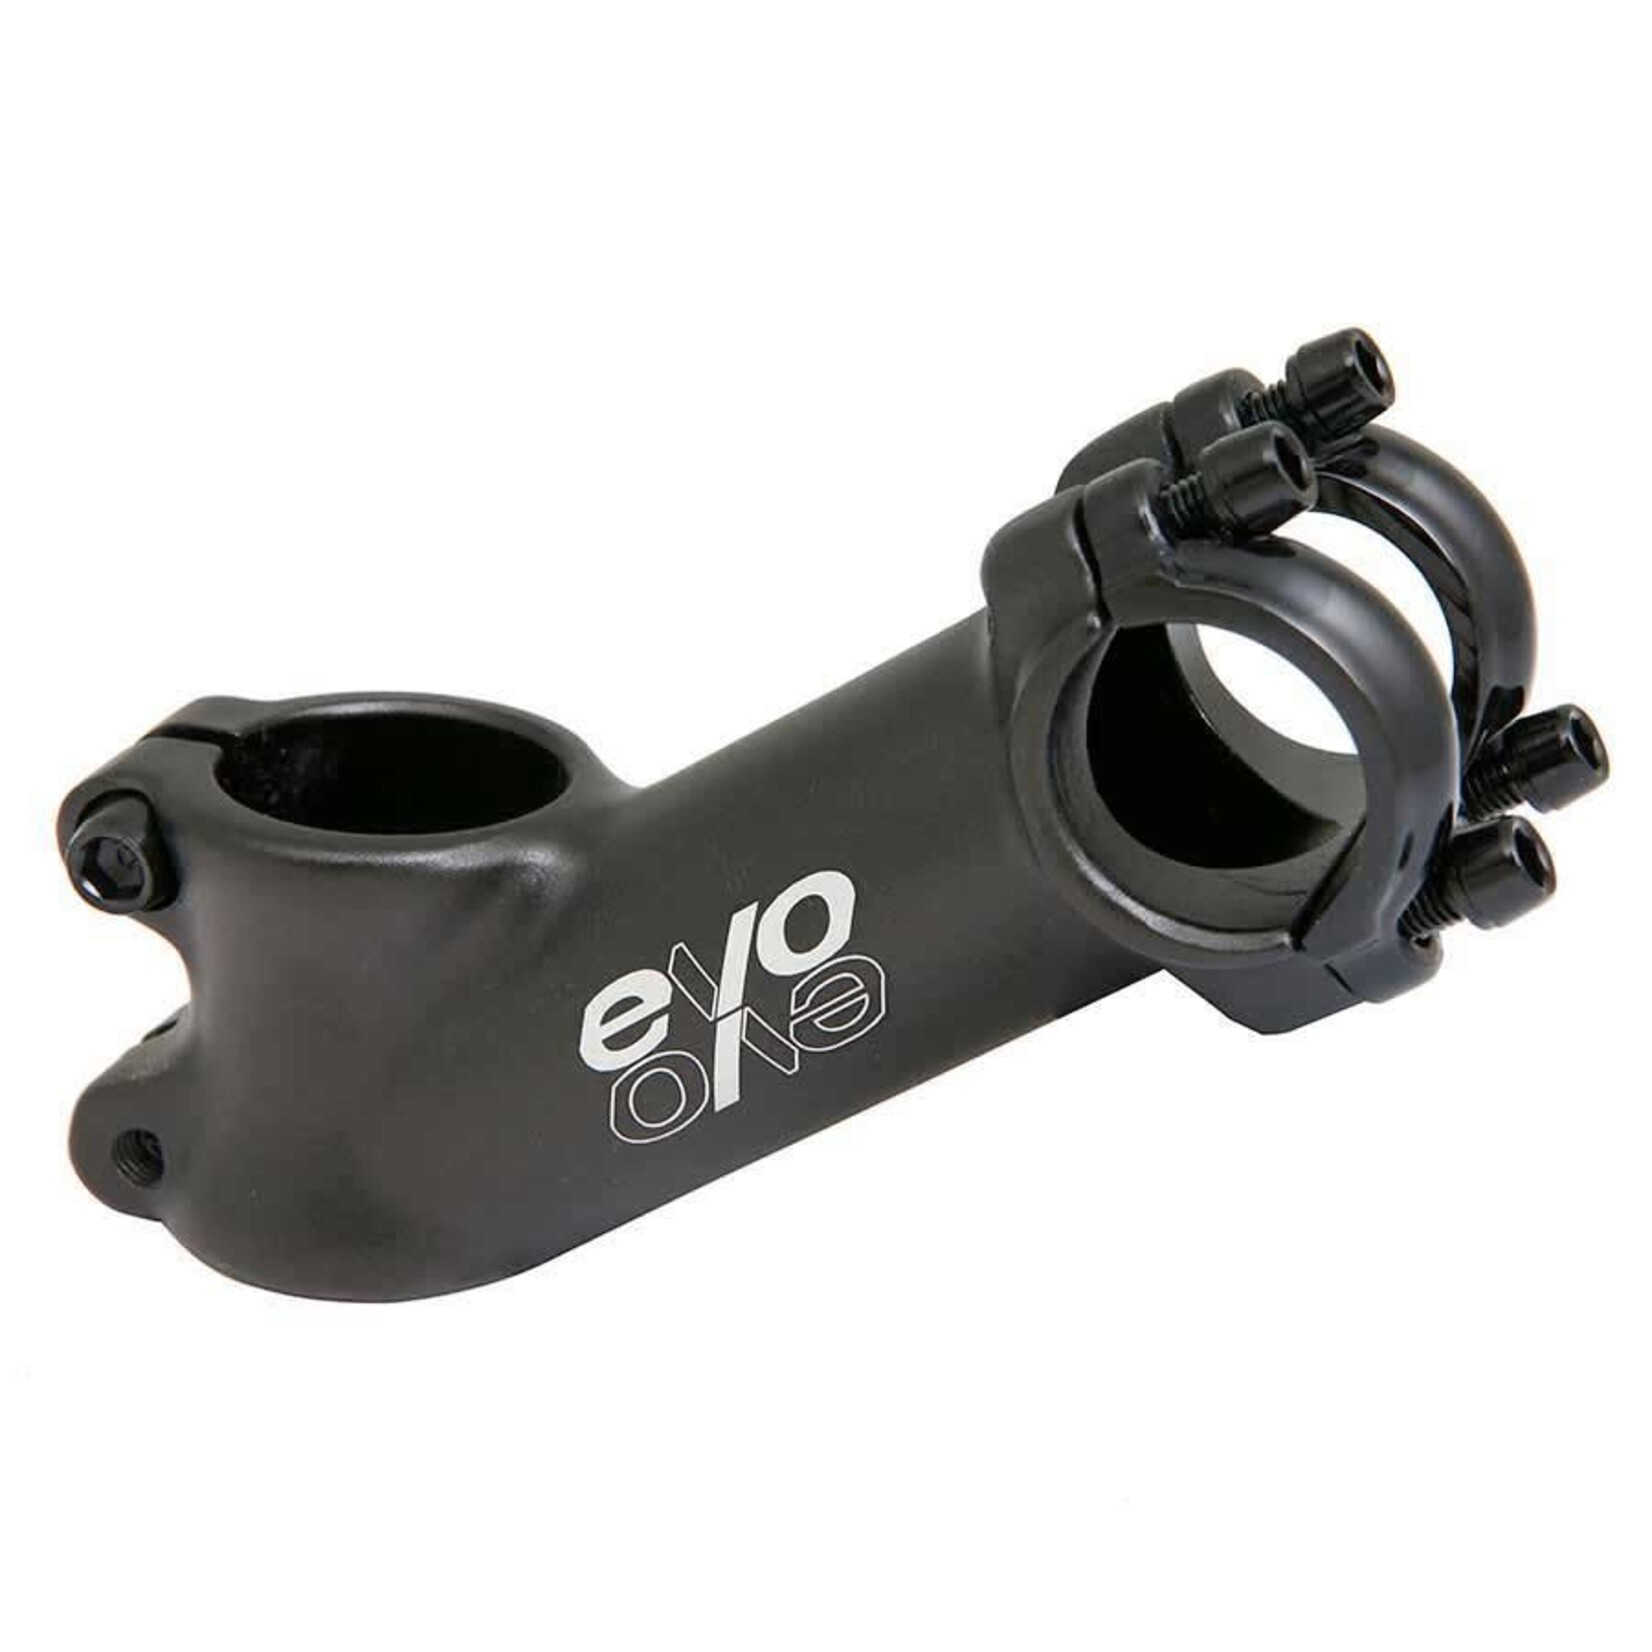 Evo Evo Stem, E-Tec, 28.6mm, For 25.4mm Handlebars, ±35°, Blk, 110mm